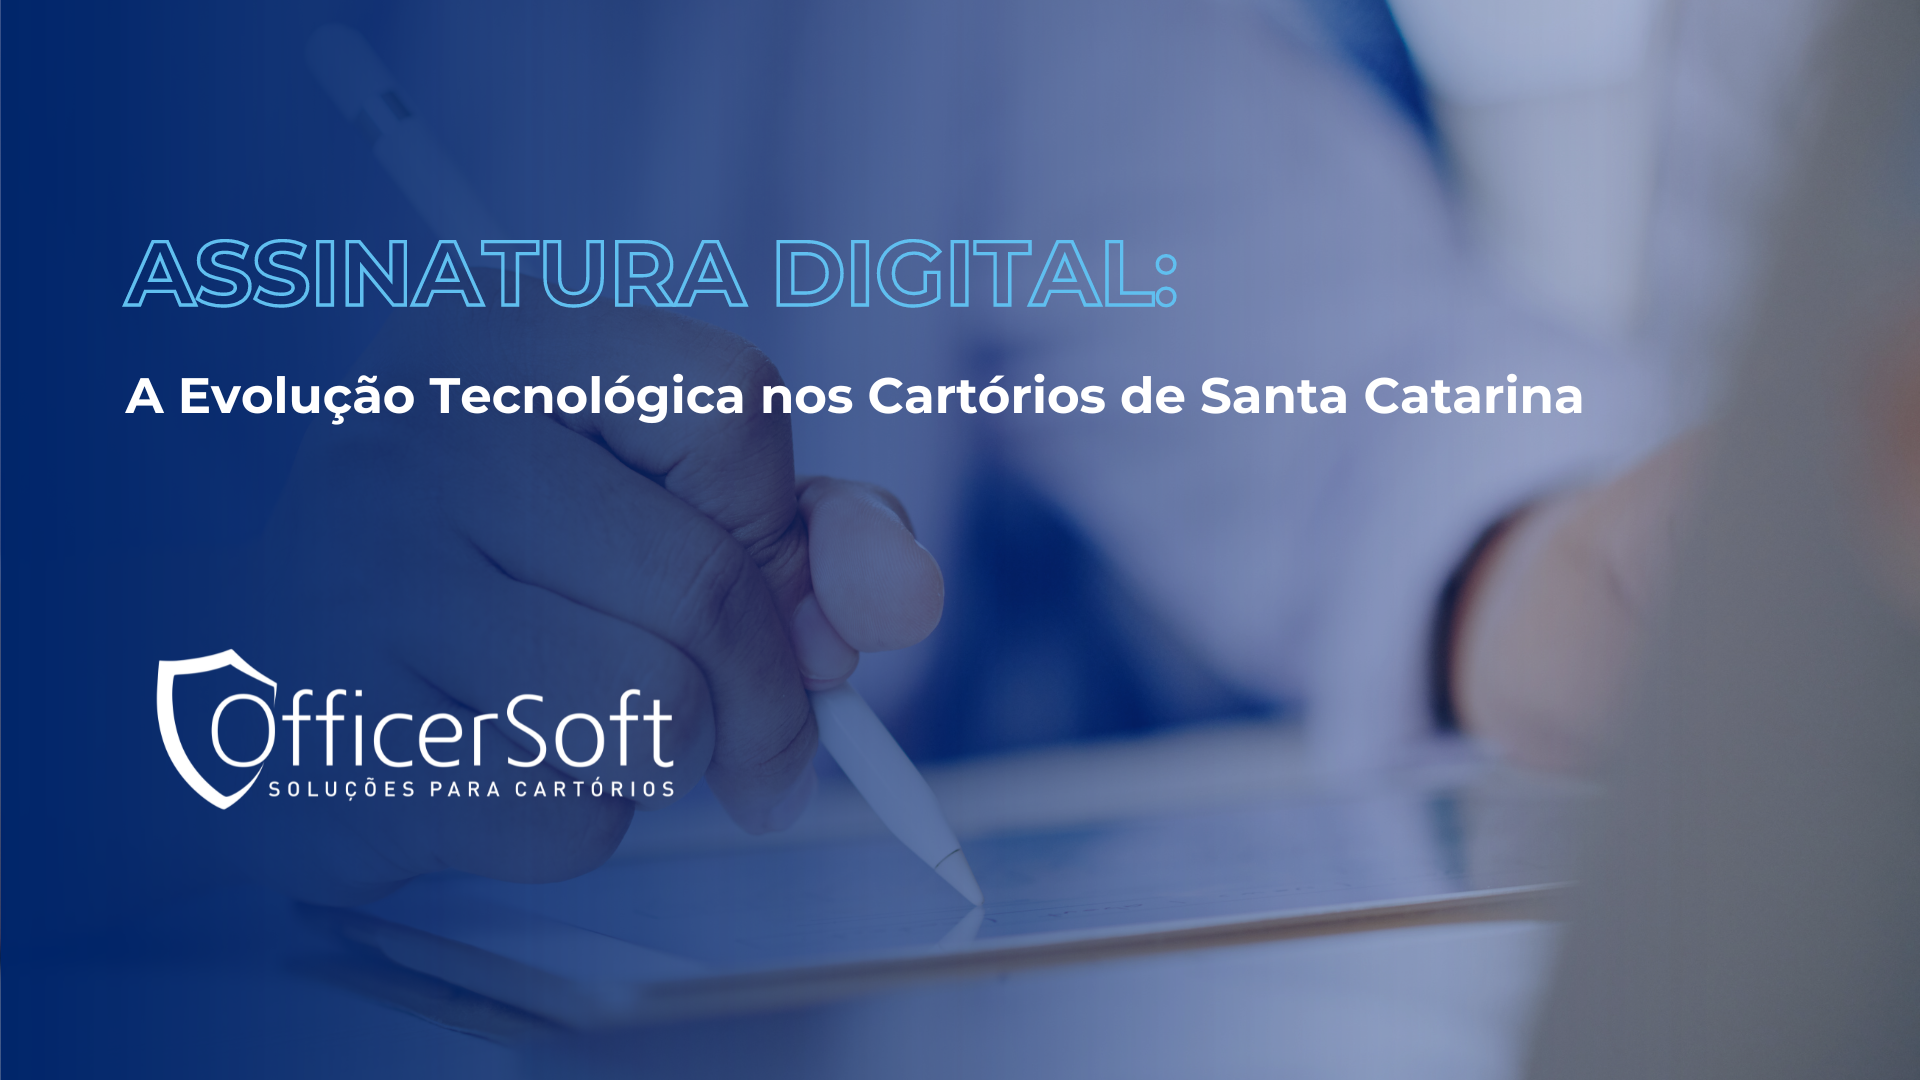 Assinatura Digital: A Evolução Tecnológica nos Cartórios de Santa Catarina